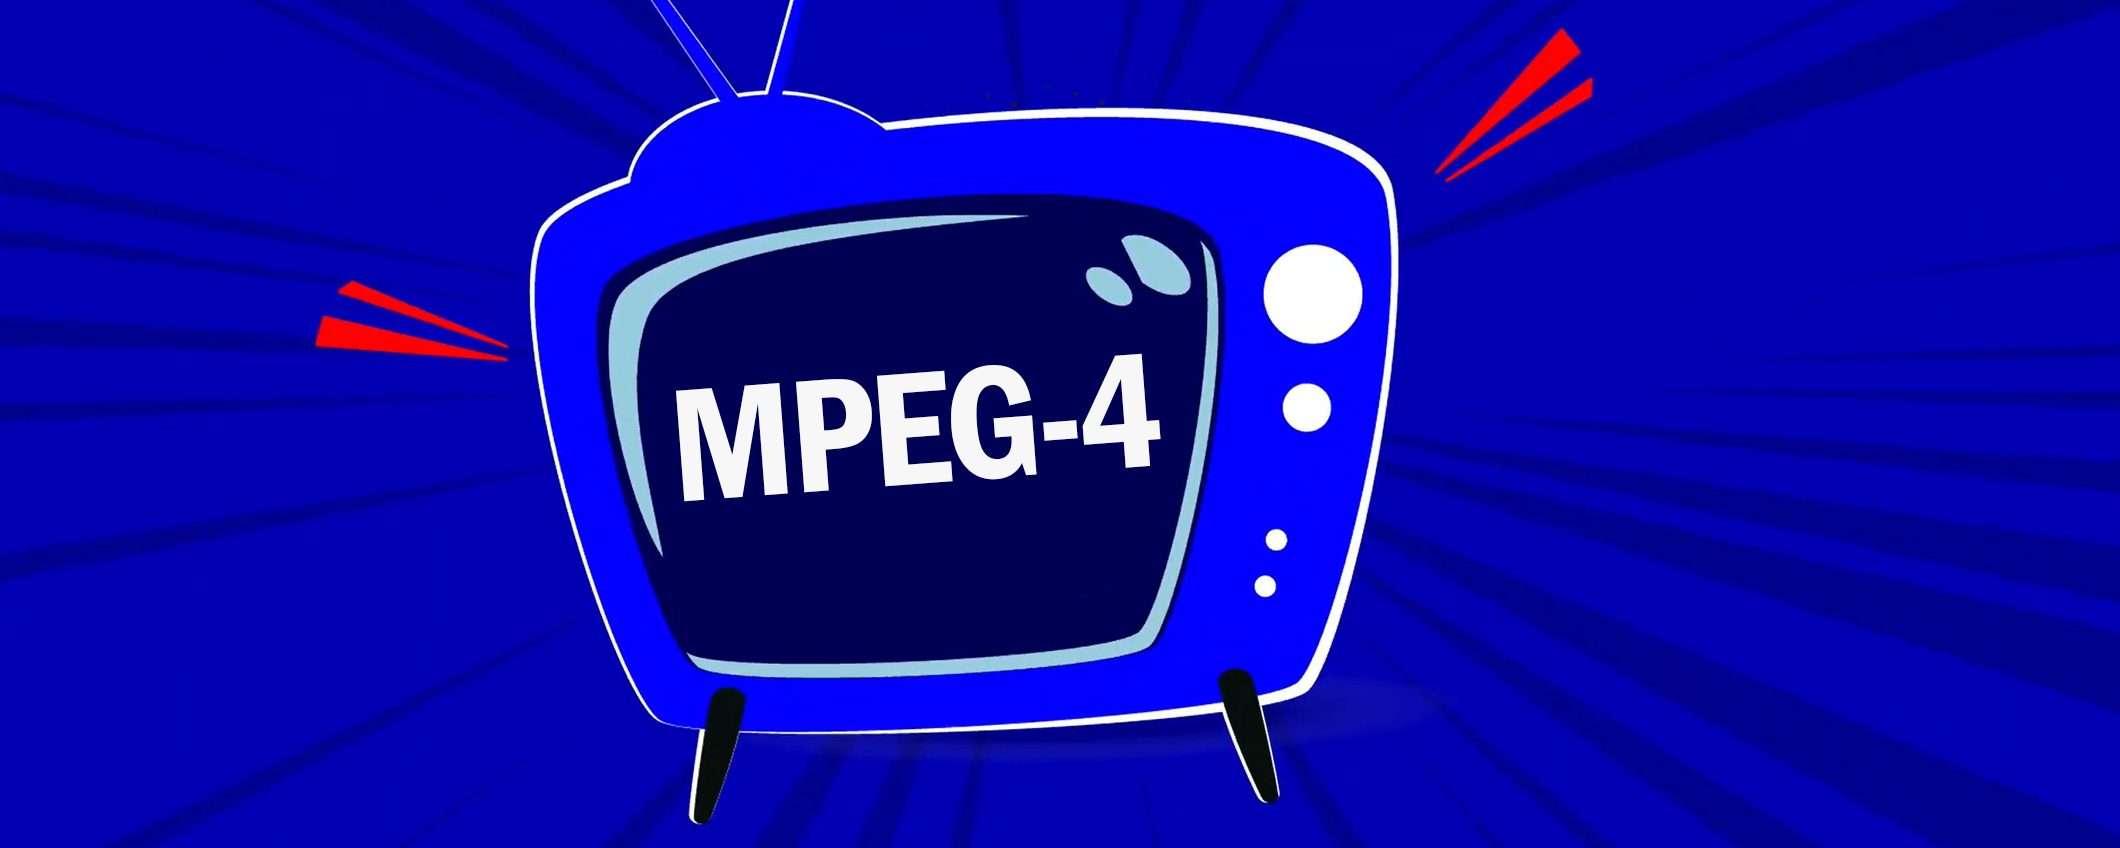 Nuova TV Digitale e MPEG-4: cosa cambia l'8 marzo